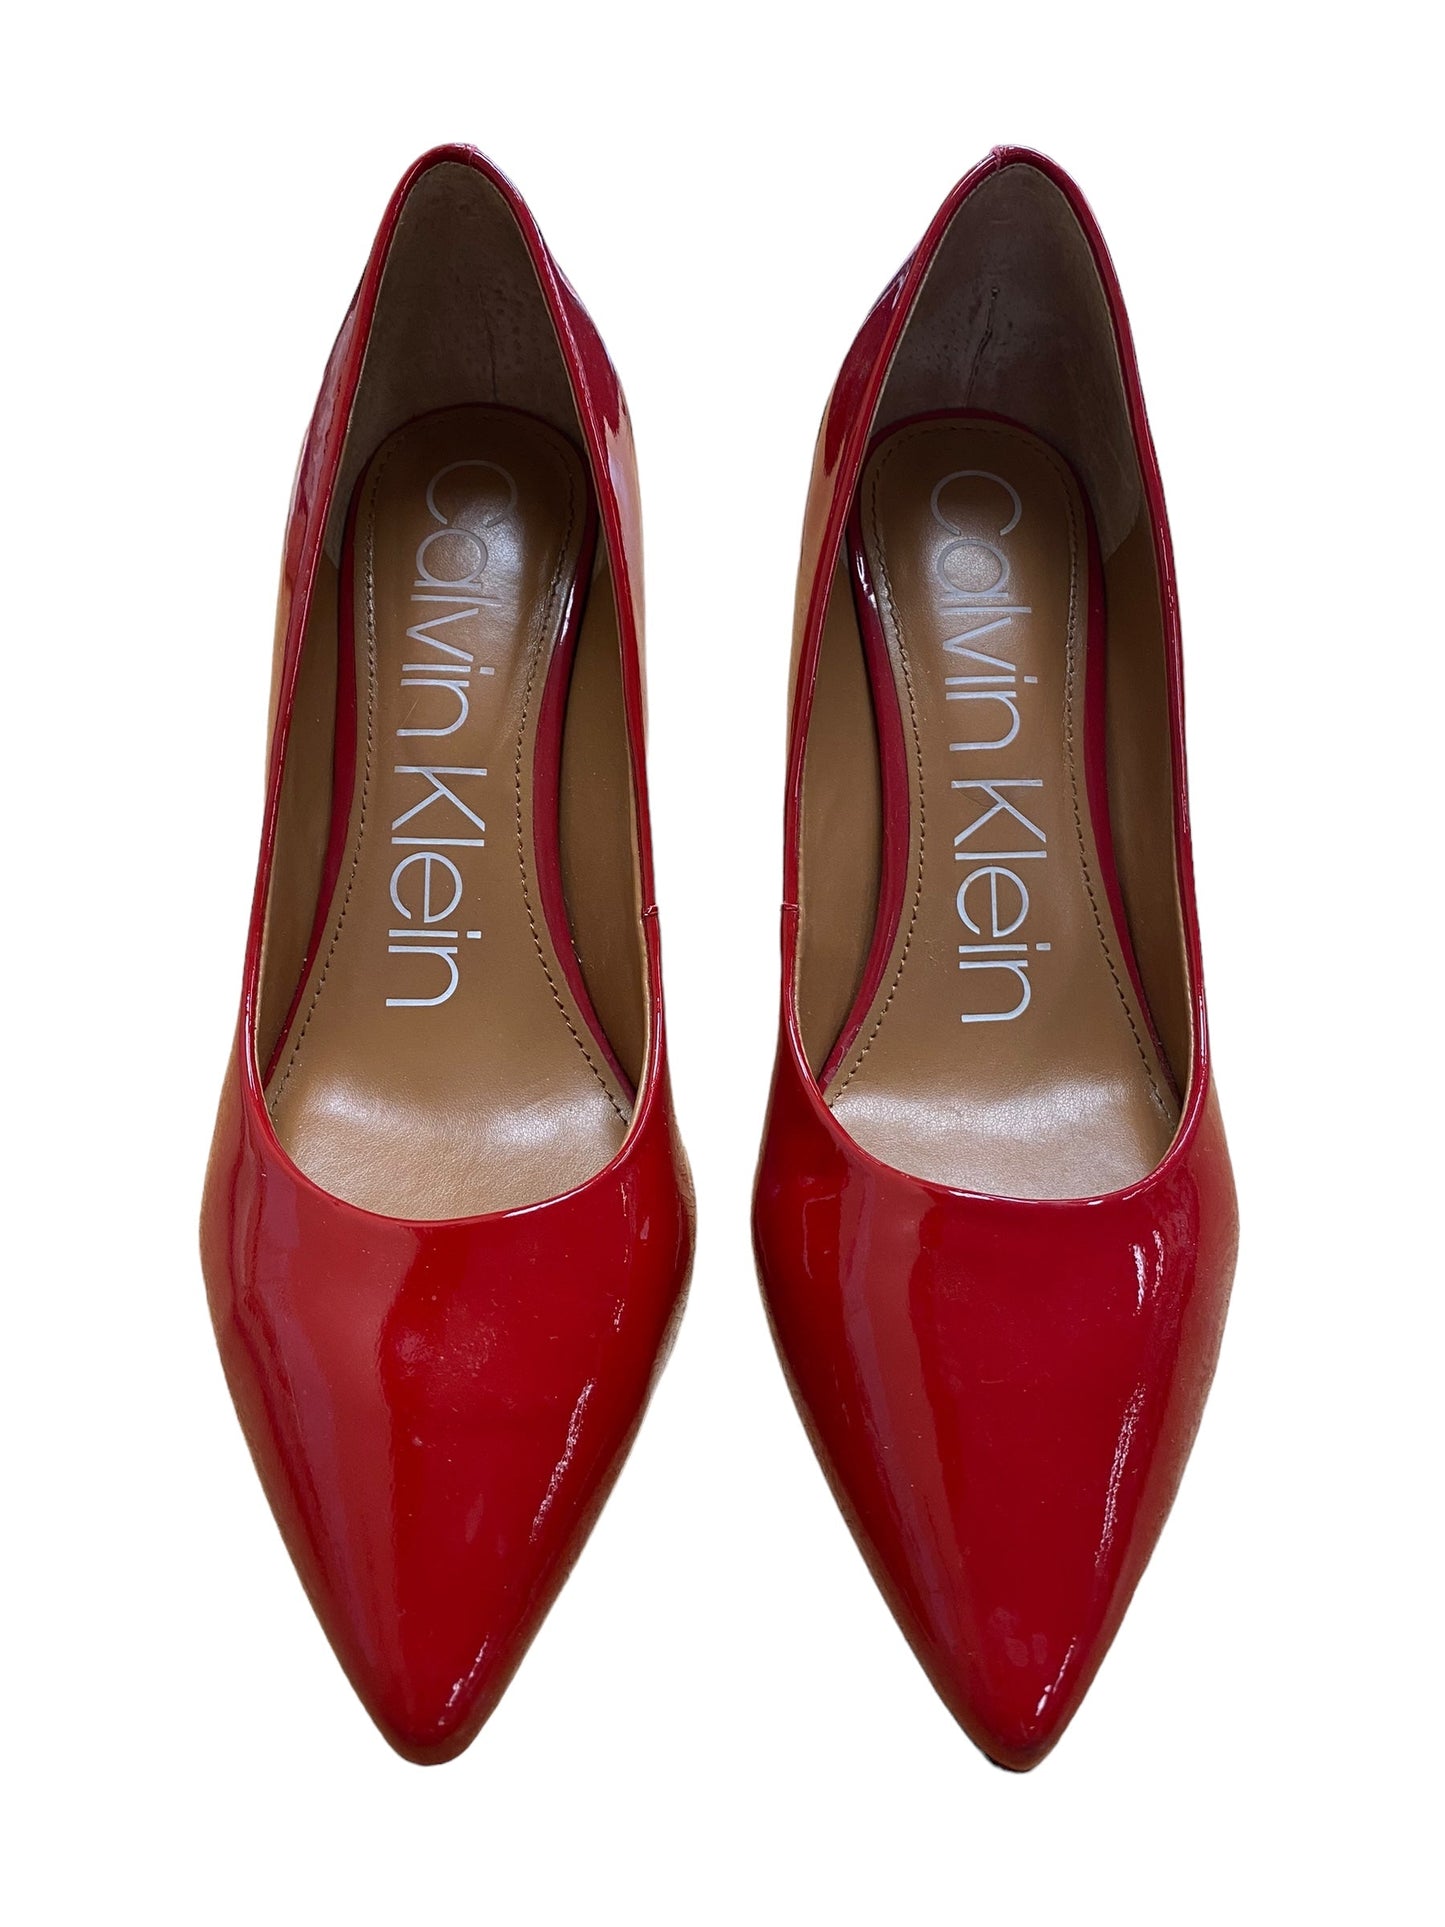 Red Shoes Heels Stiletto Calvin Klein, Size 9